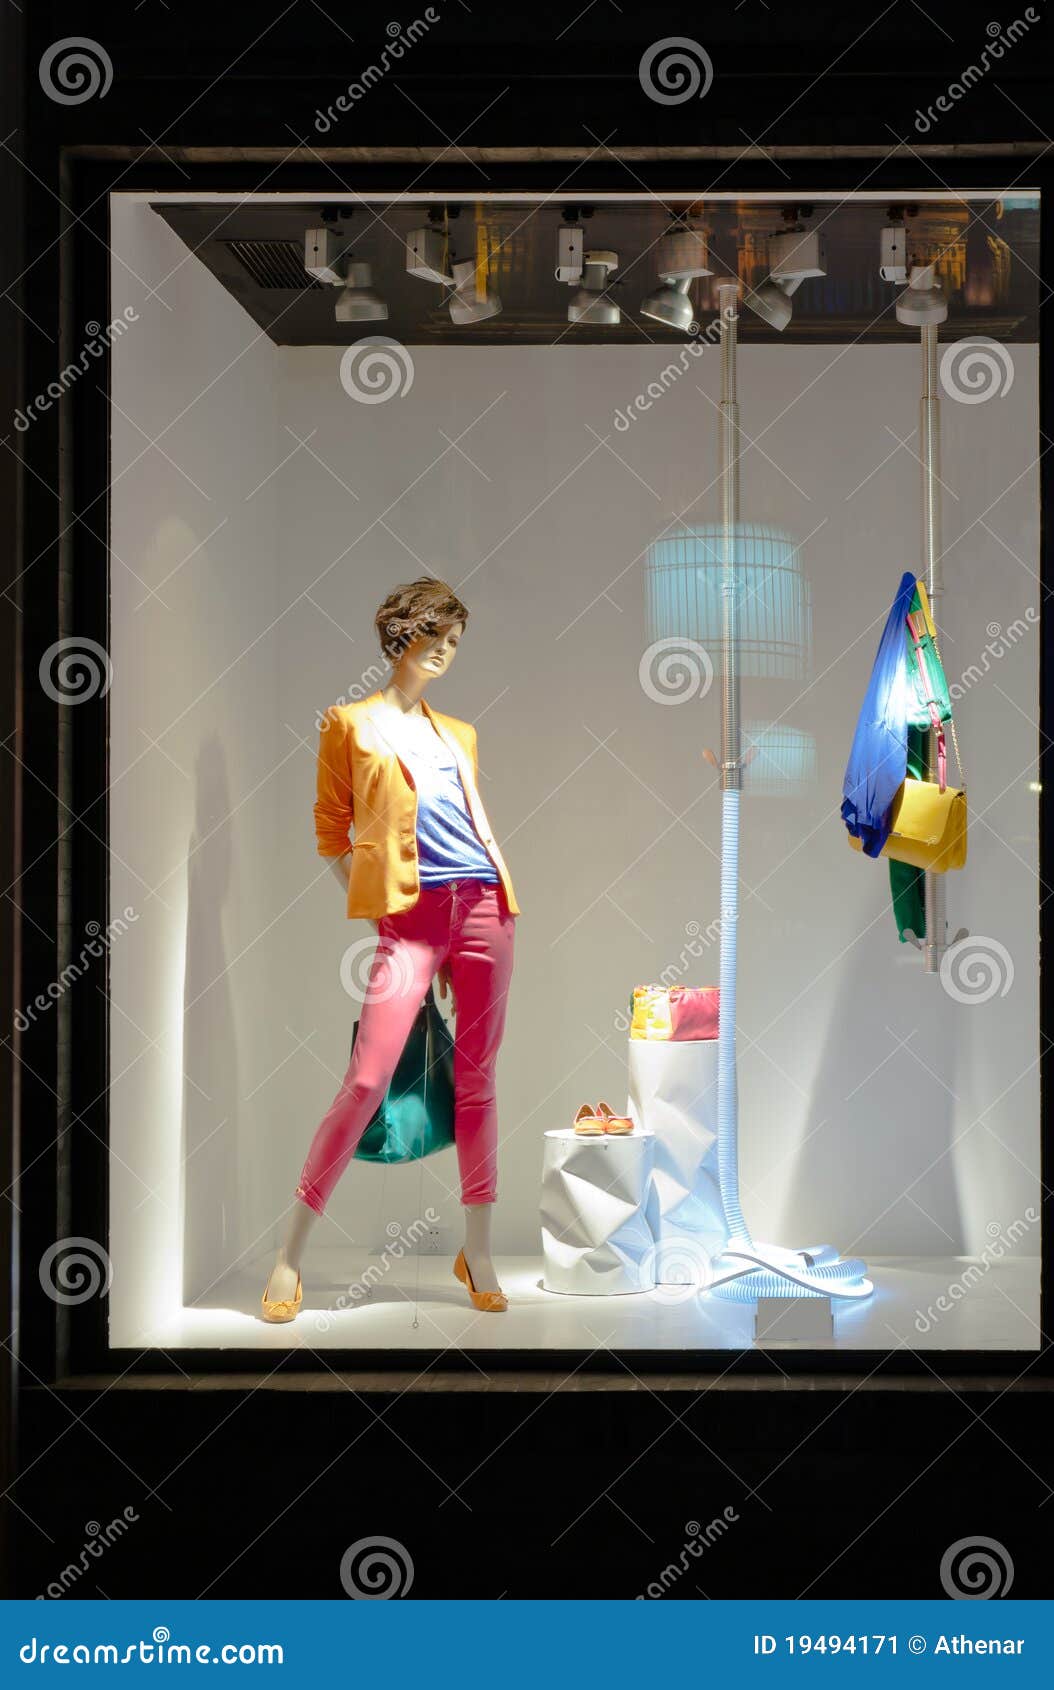 mannequin in fashion showcase